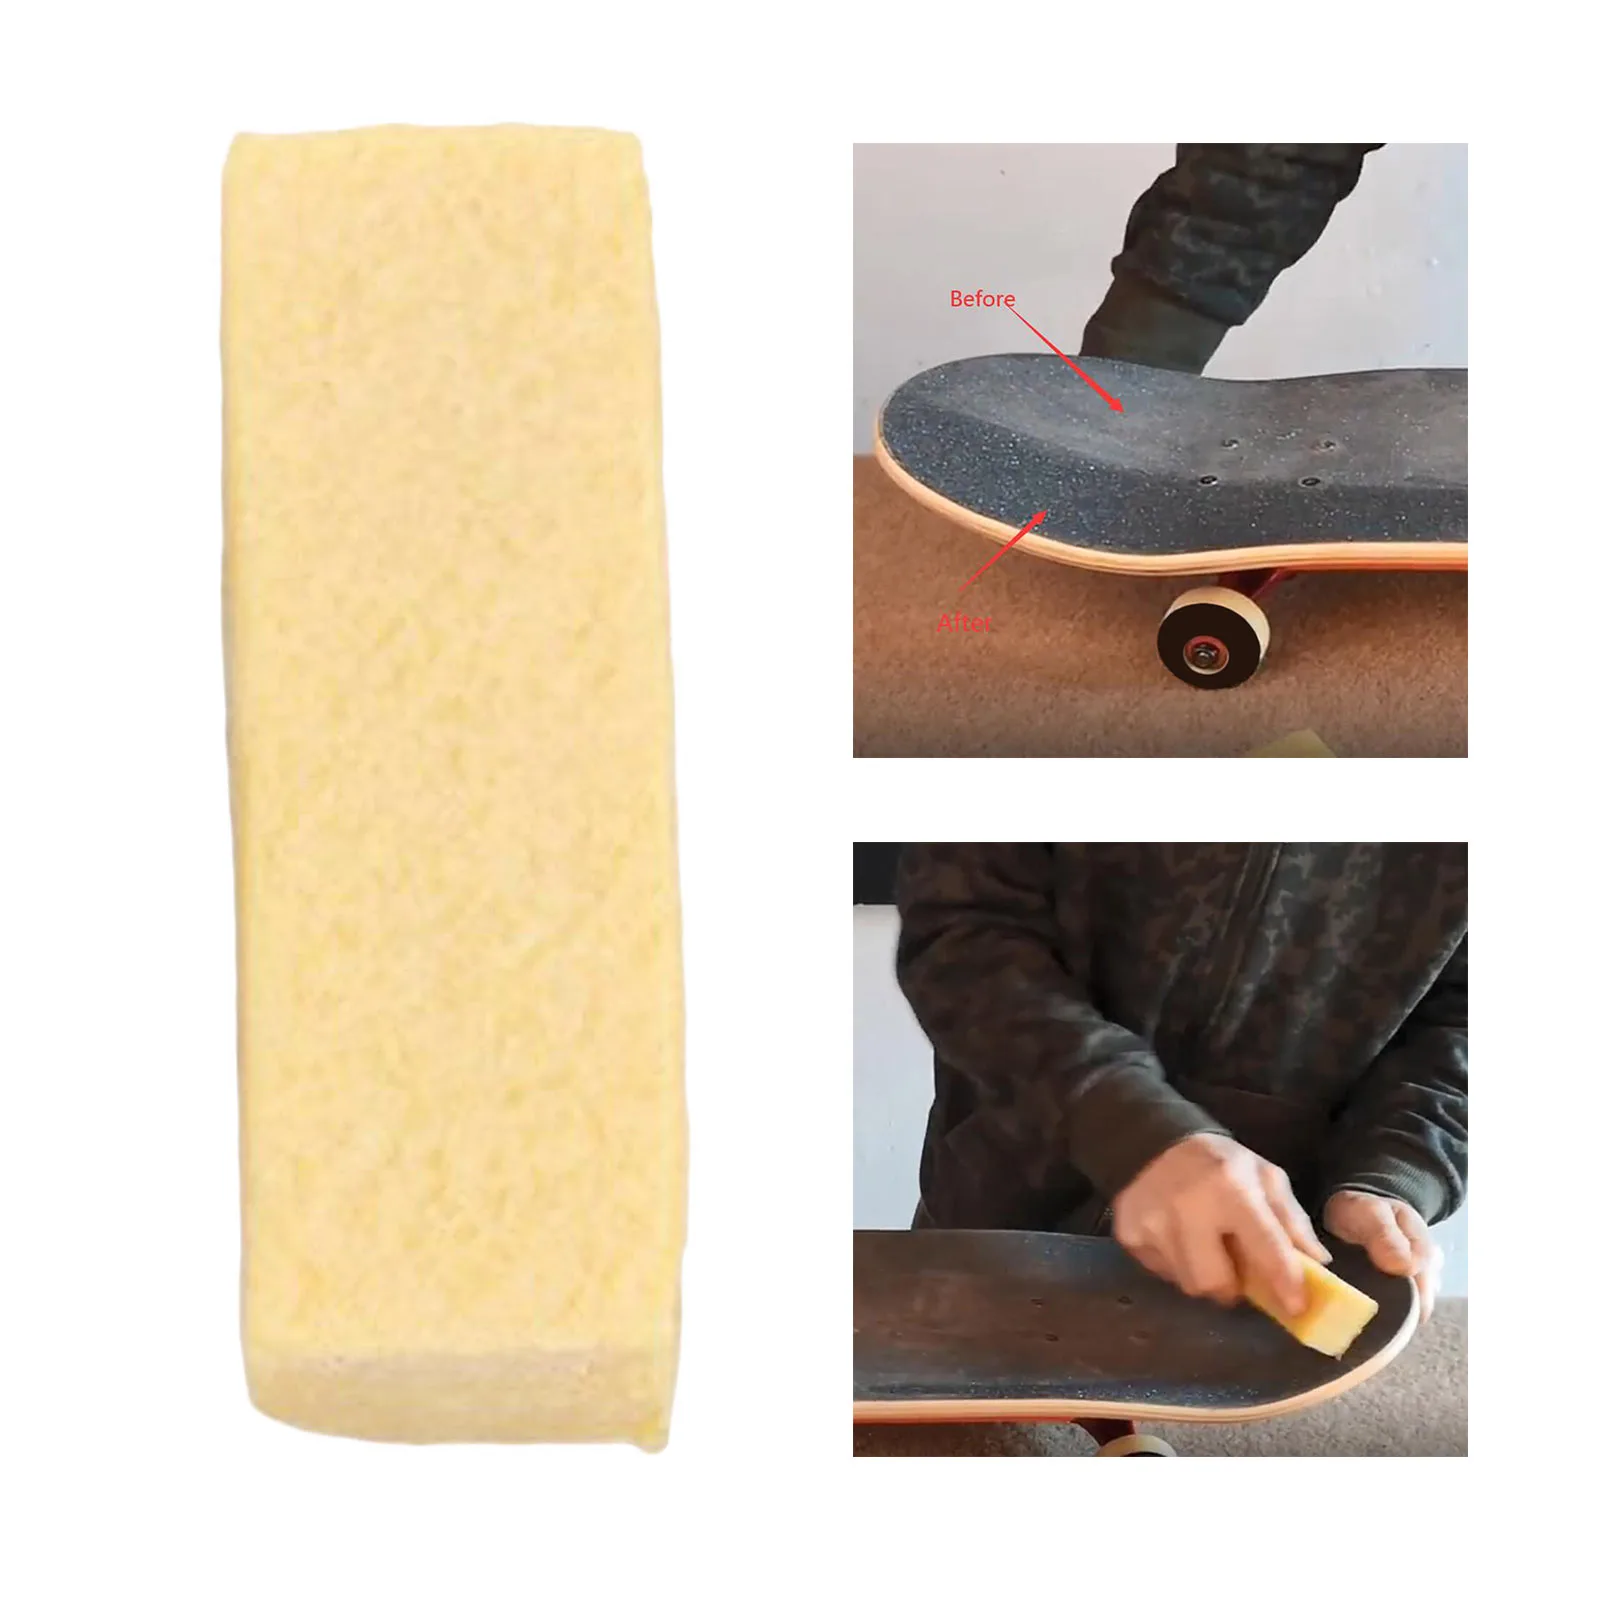 Rough Cleaning Stick for Sanding Discs, Sandpaper Belts, Skateboards Rubber Eraser- Grip Tape Cleaner, Dirt, Grim Debris Remover